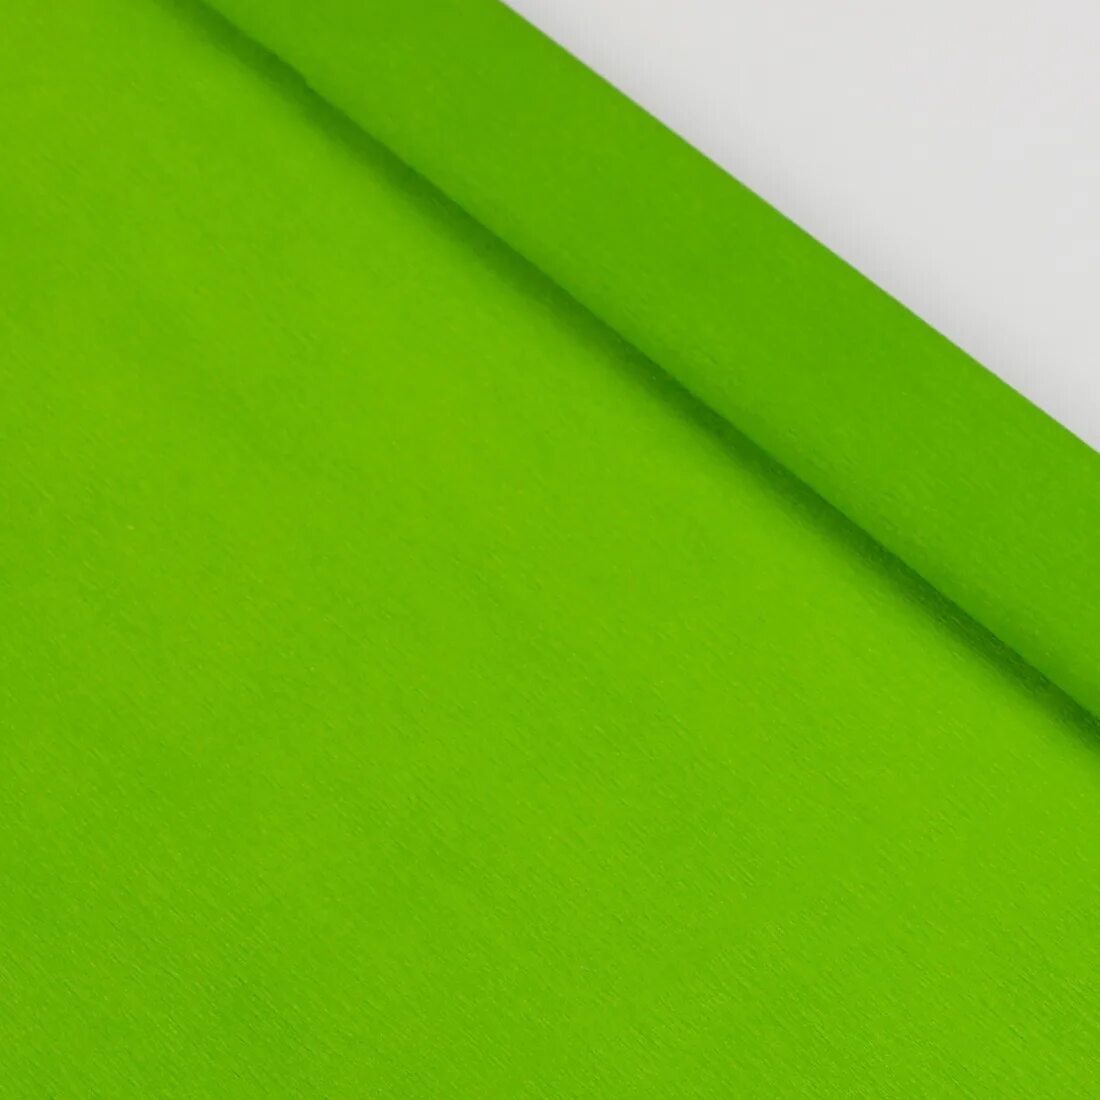 Бумага крепированная, зелёная. Цветная бумага зеленого цвета. Бумага салатового цвета. Зеленый цвет бумаги.